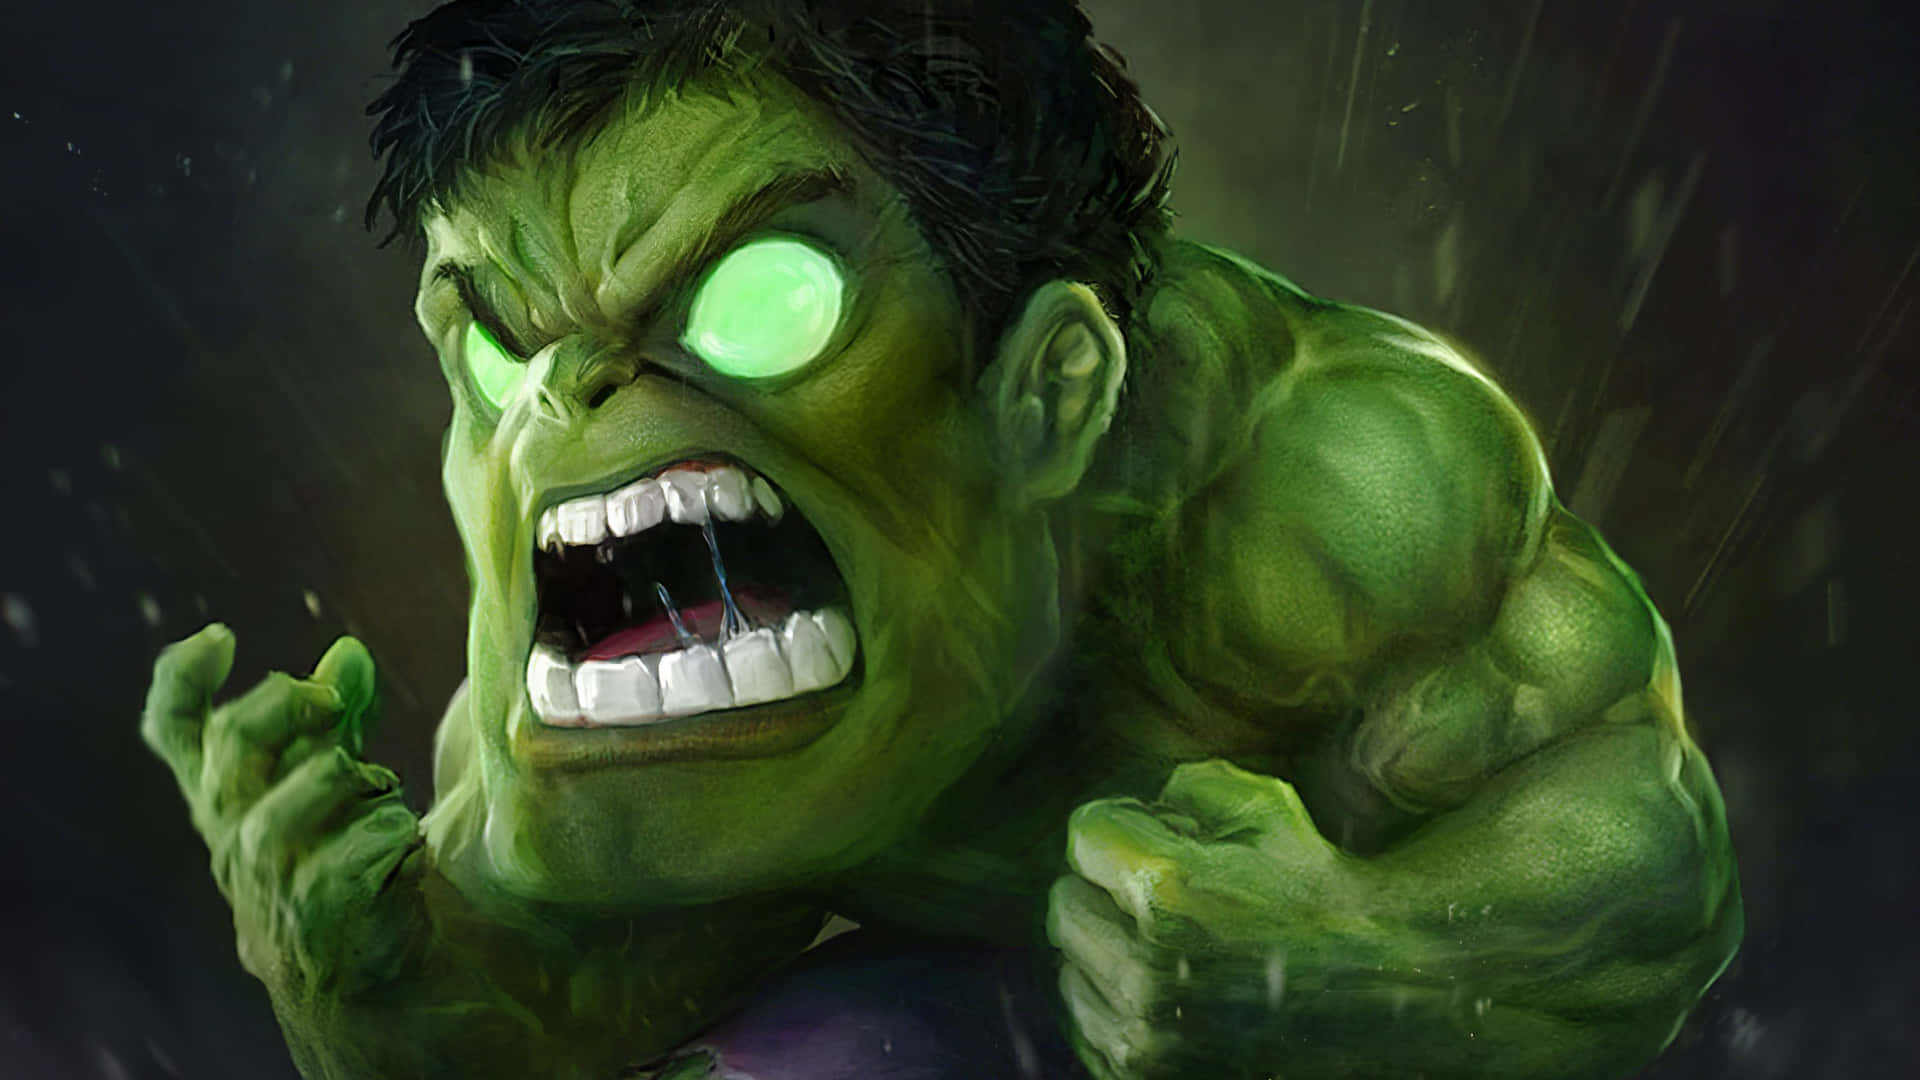 Derunglaubliche Hulk!